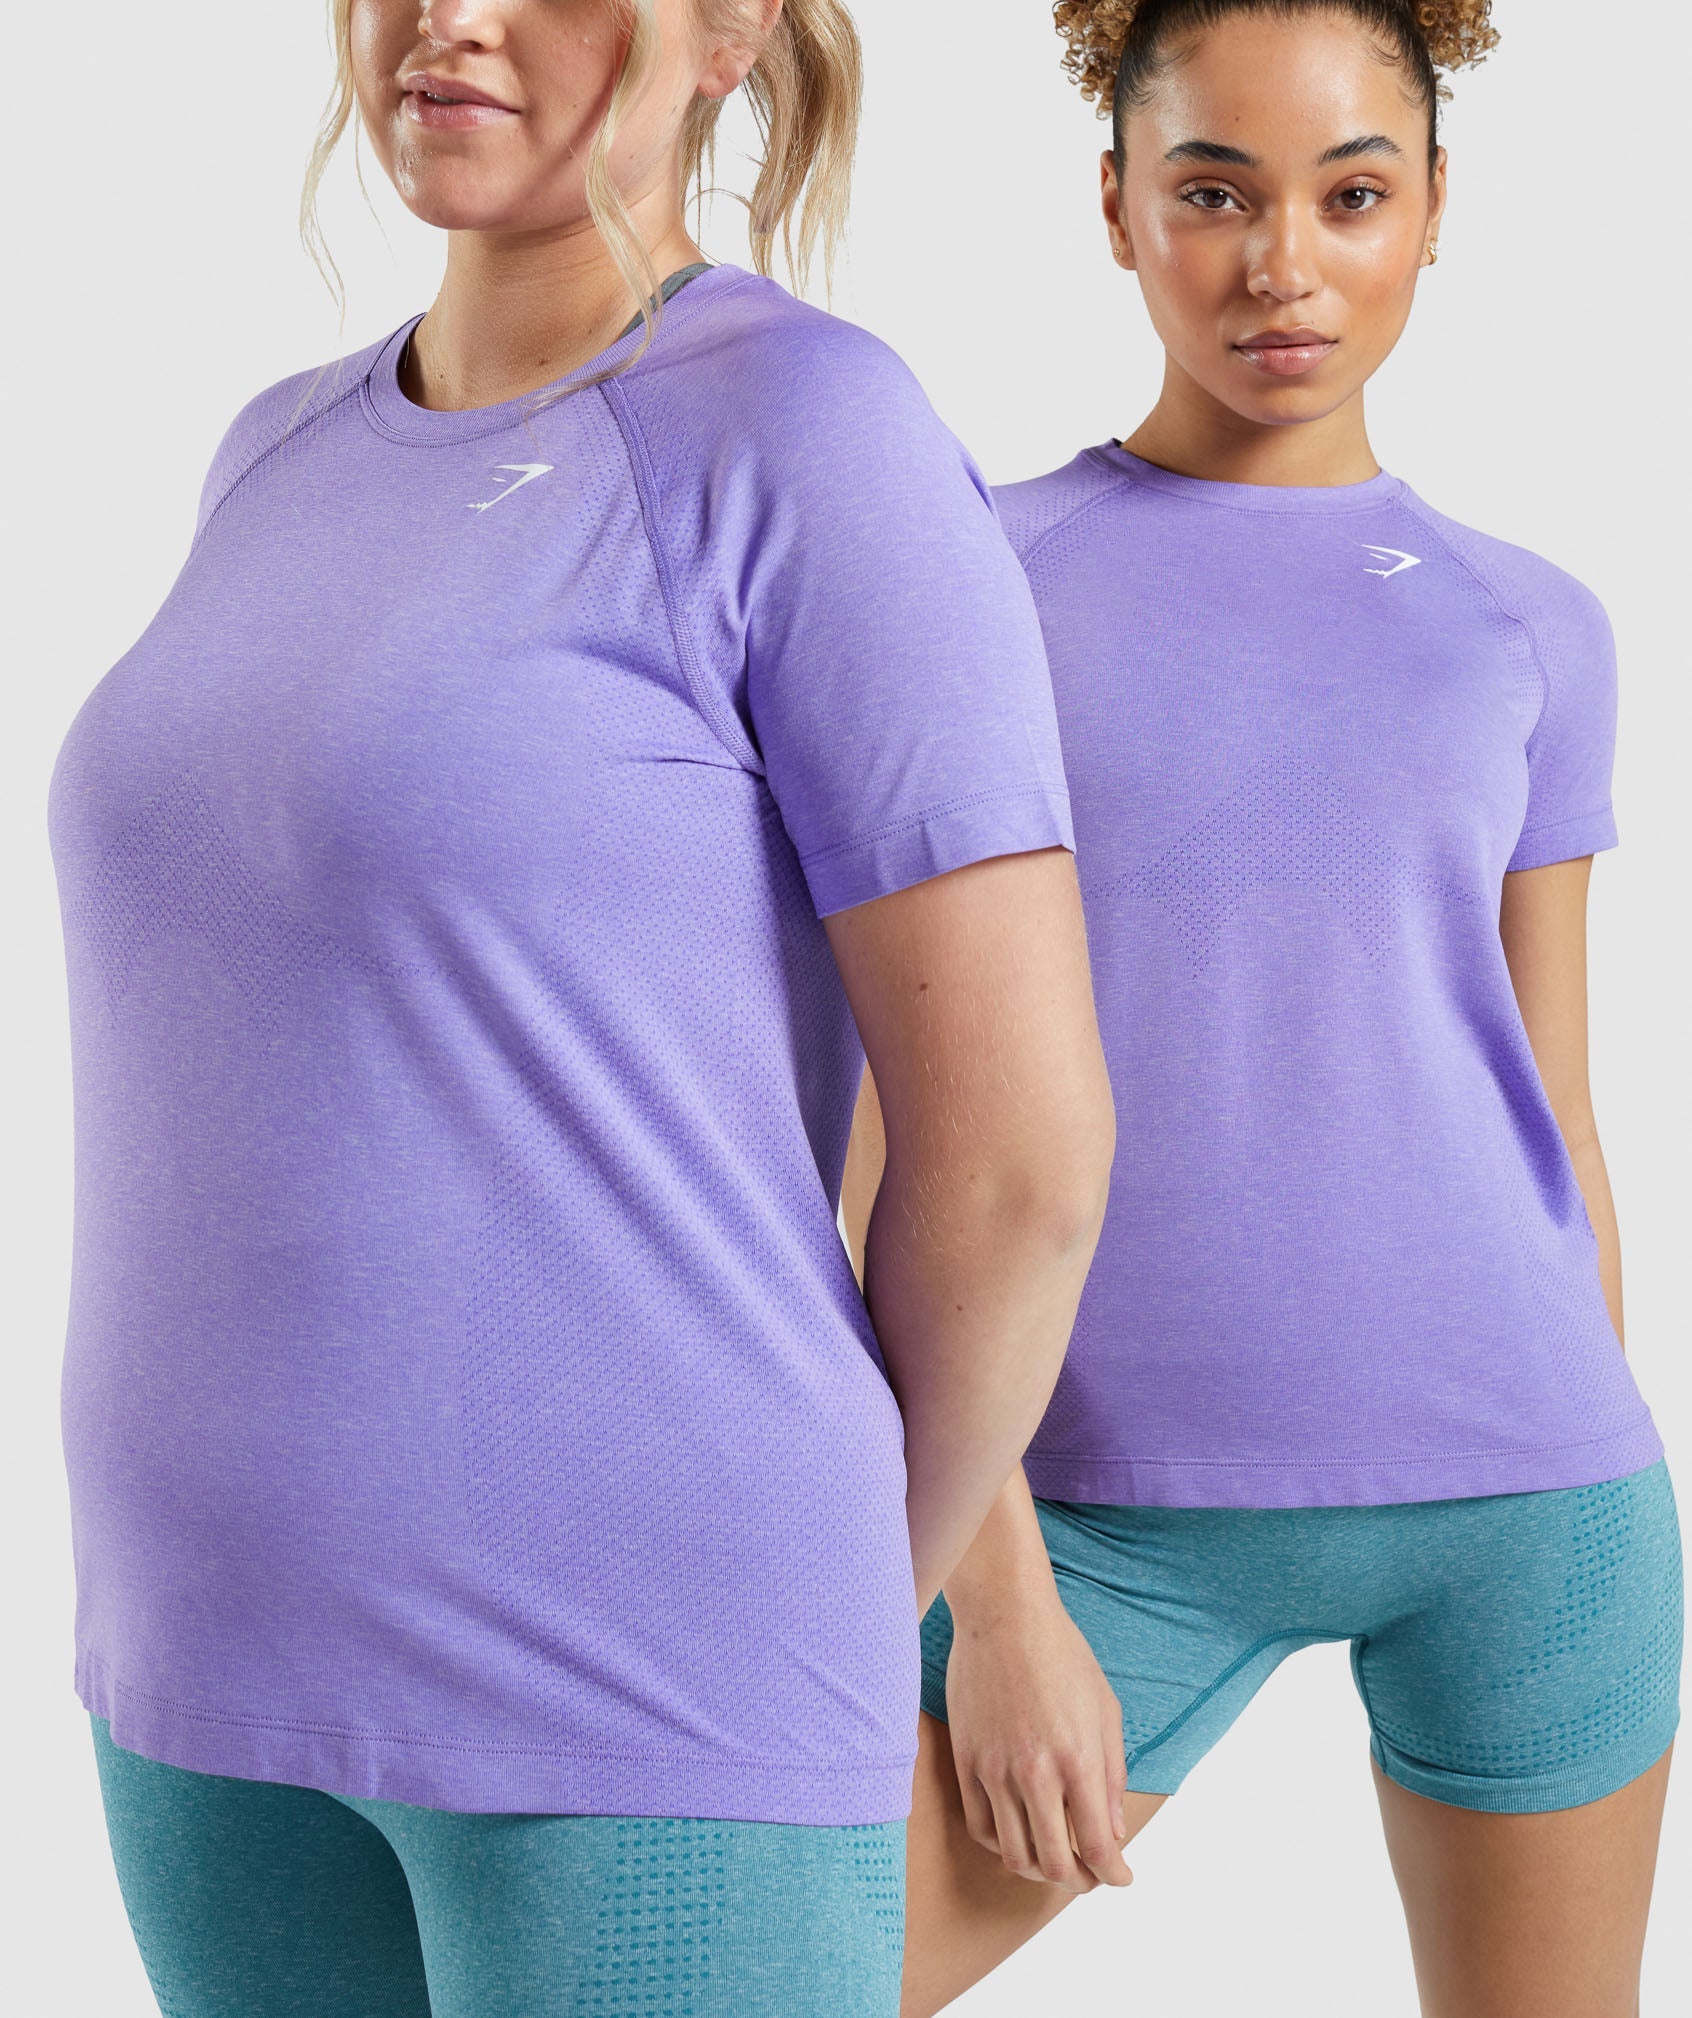 Vital Seamless 2.0 Light T-Shirt in Bright Purple Marl - view 6